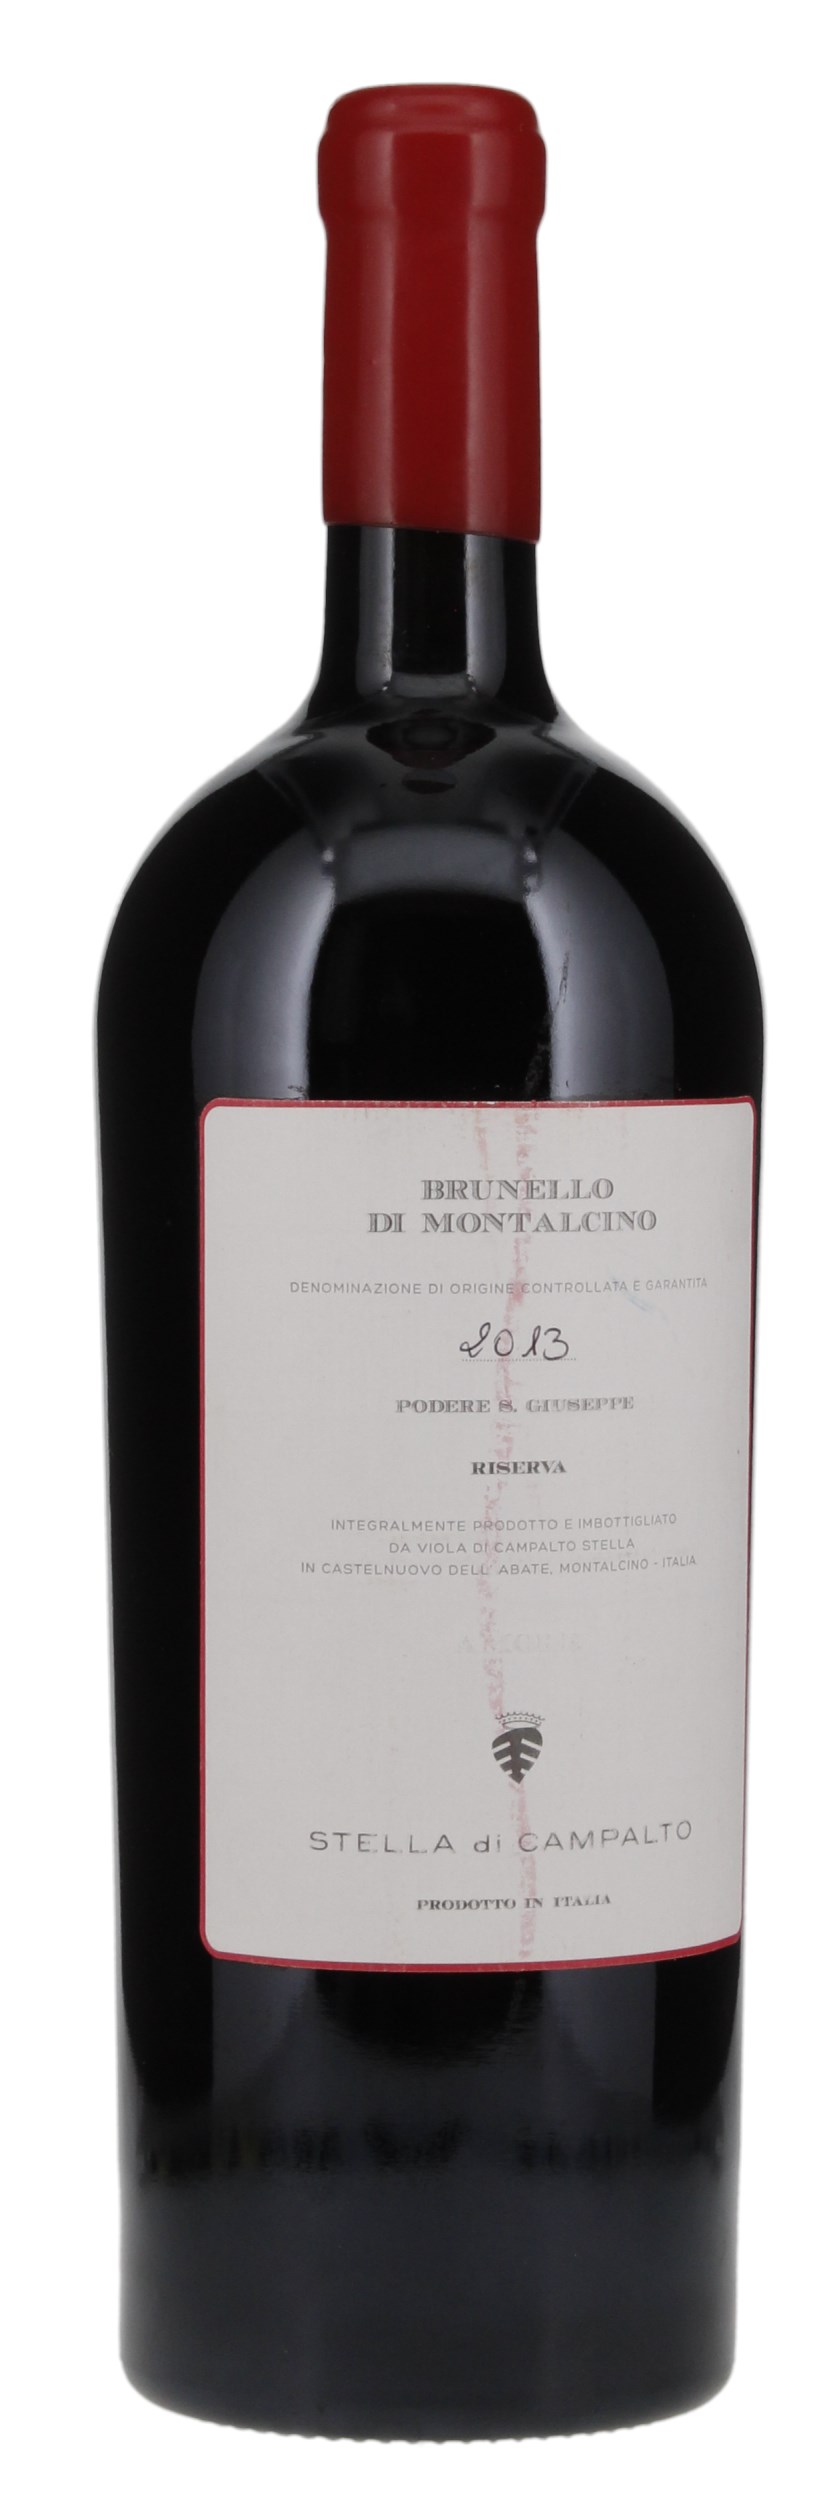 2013 Stella di Campalto Brunello di Montalcino Riserva, 1.5ltr